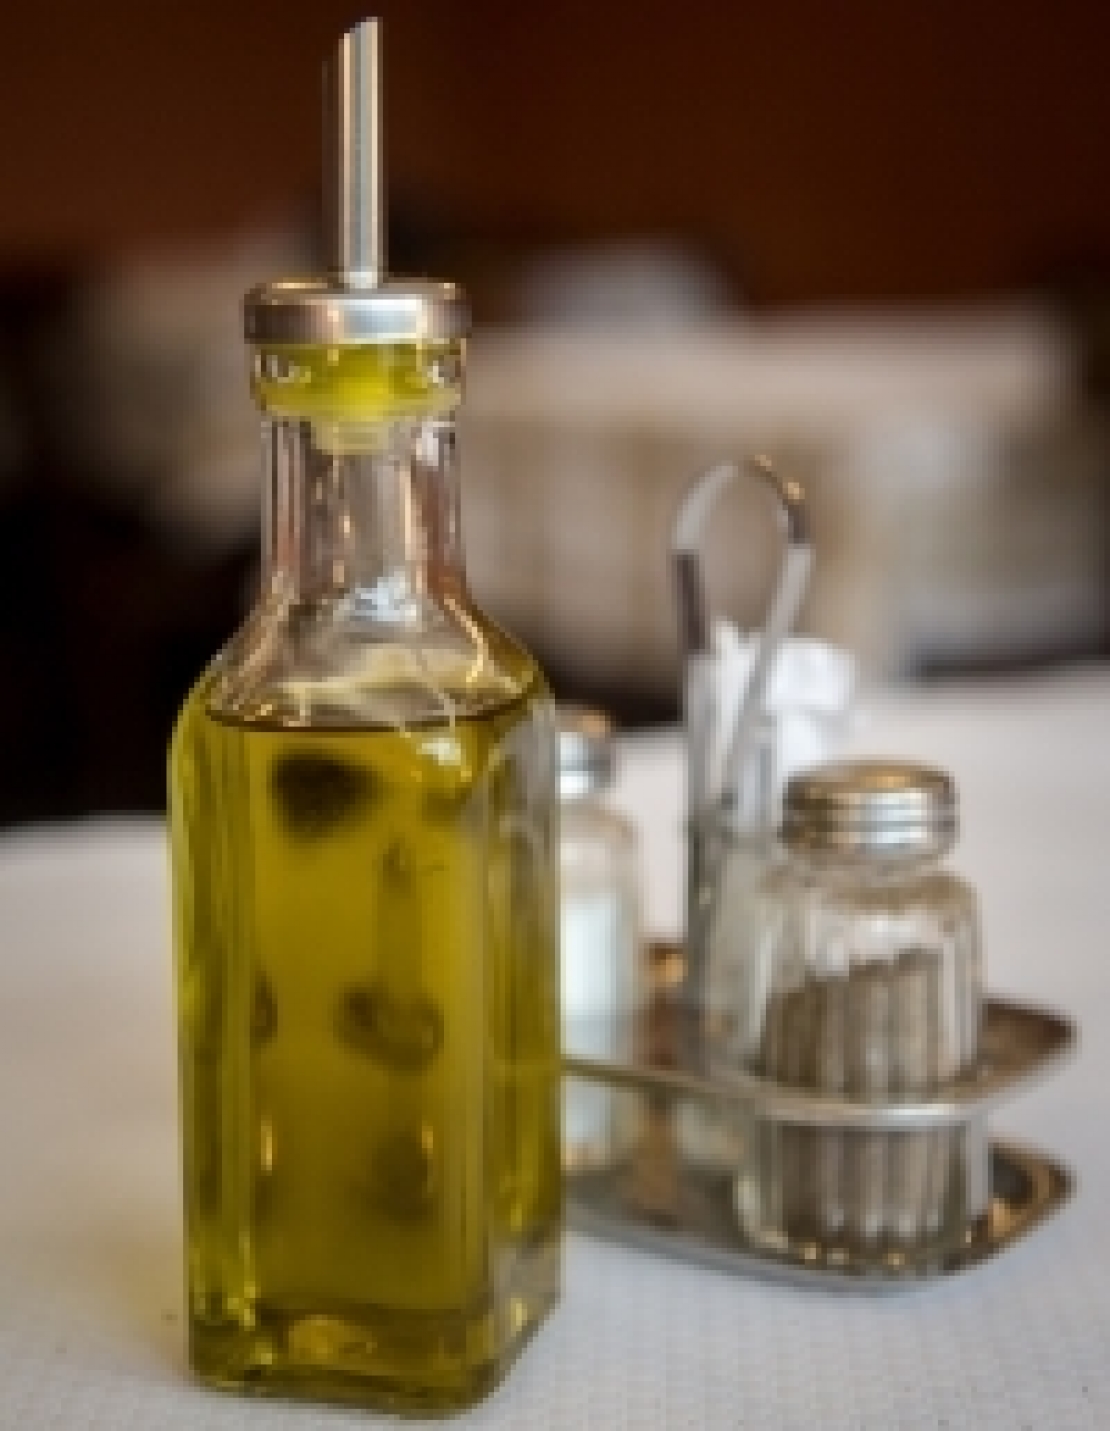 Regalare un po' d'olio extra vergine d'oliva a un ristorante? Niente di più difficile